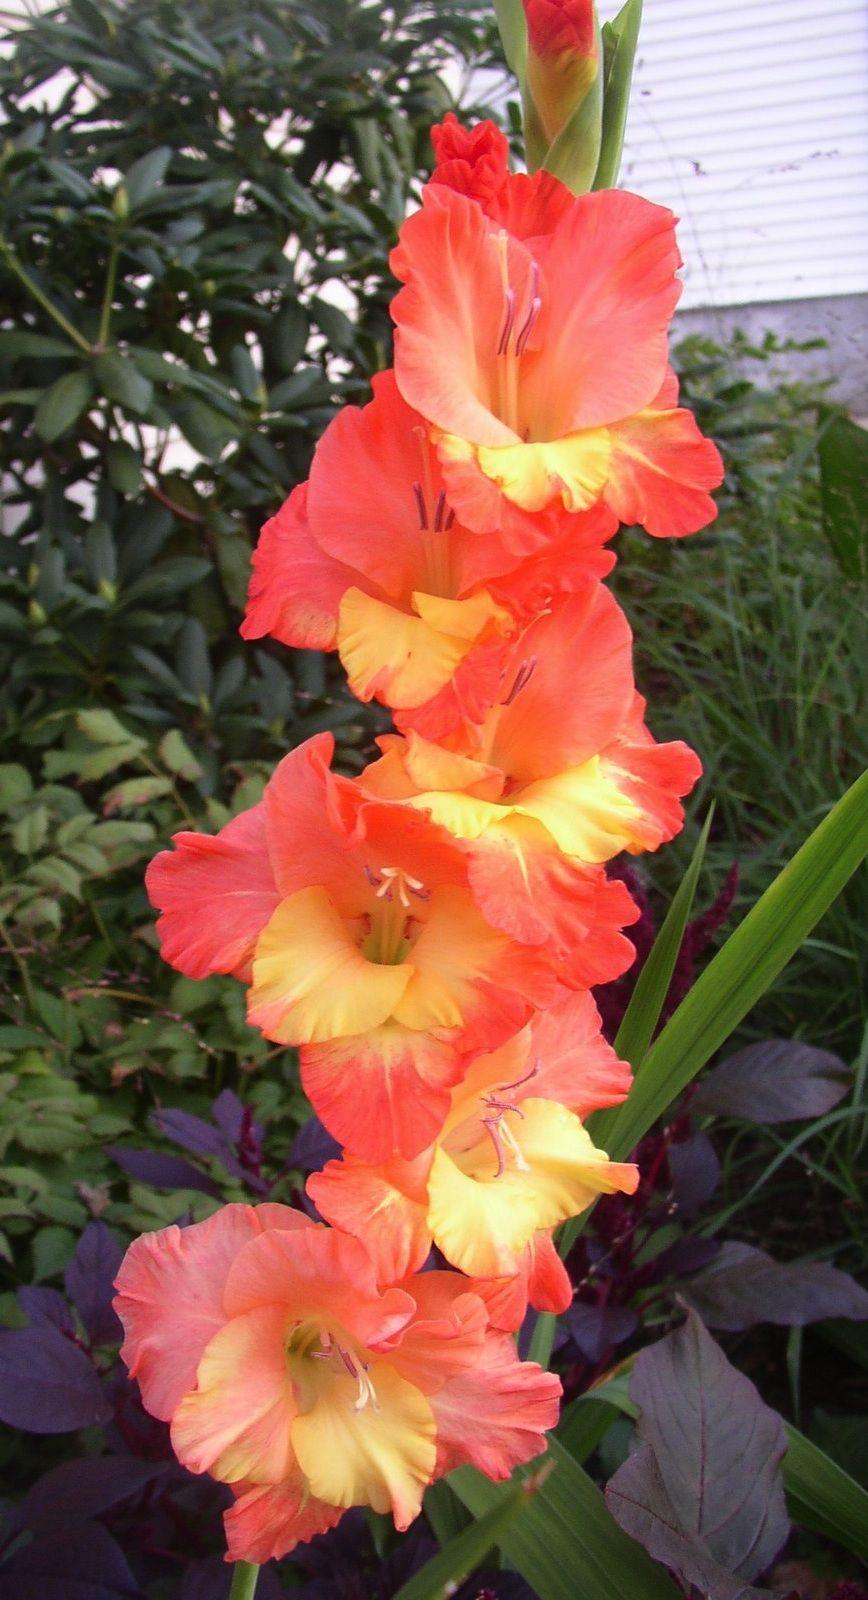 Gladiolus 'Apricot Dream' (Gladiolus). Flowers. Gladiolus flower